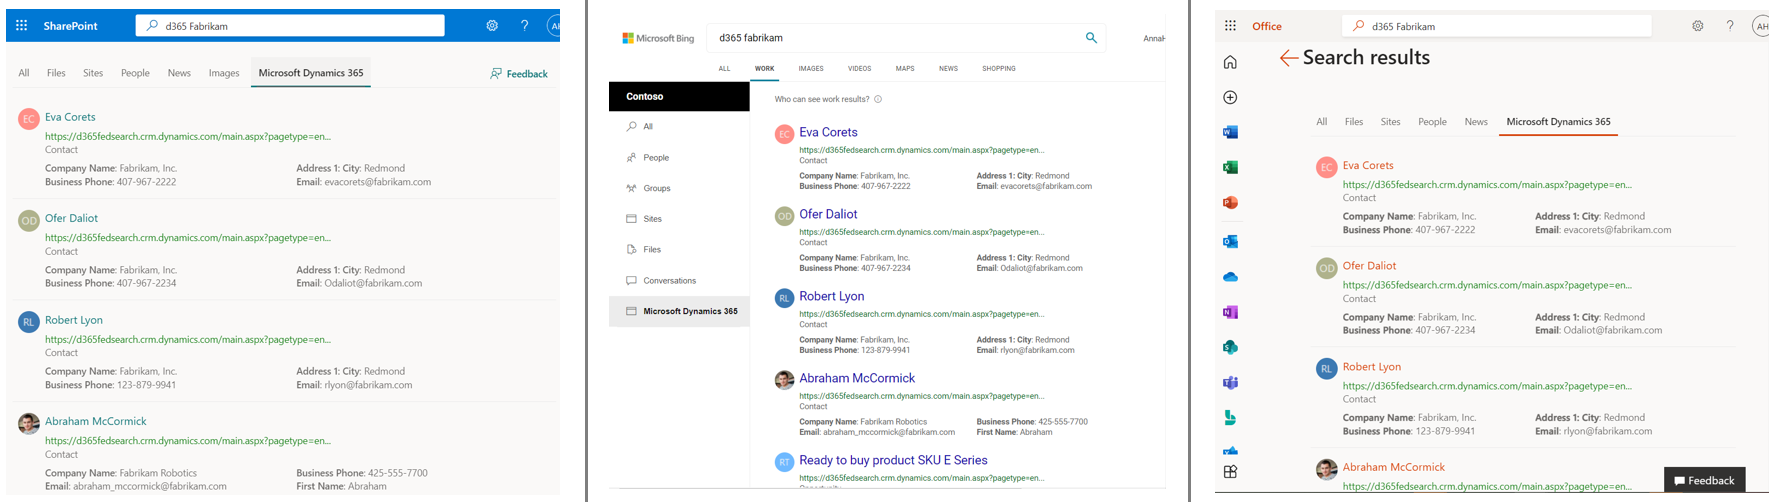 Capture d’écran de Dynamics 365 vertical et des résultats sur SharePoint, Bing et Office.